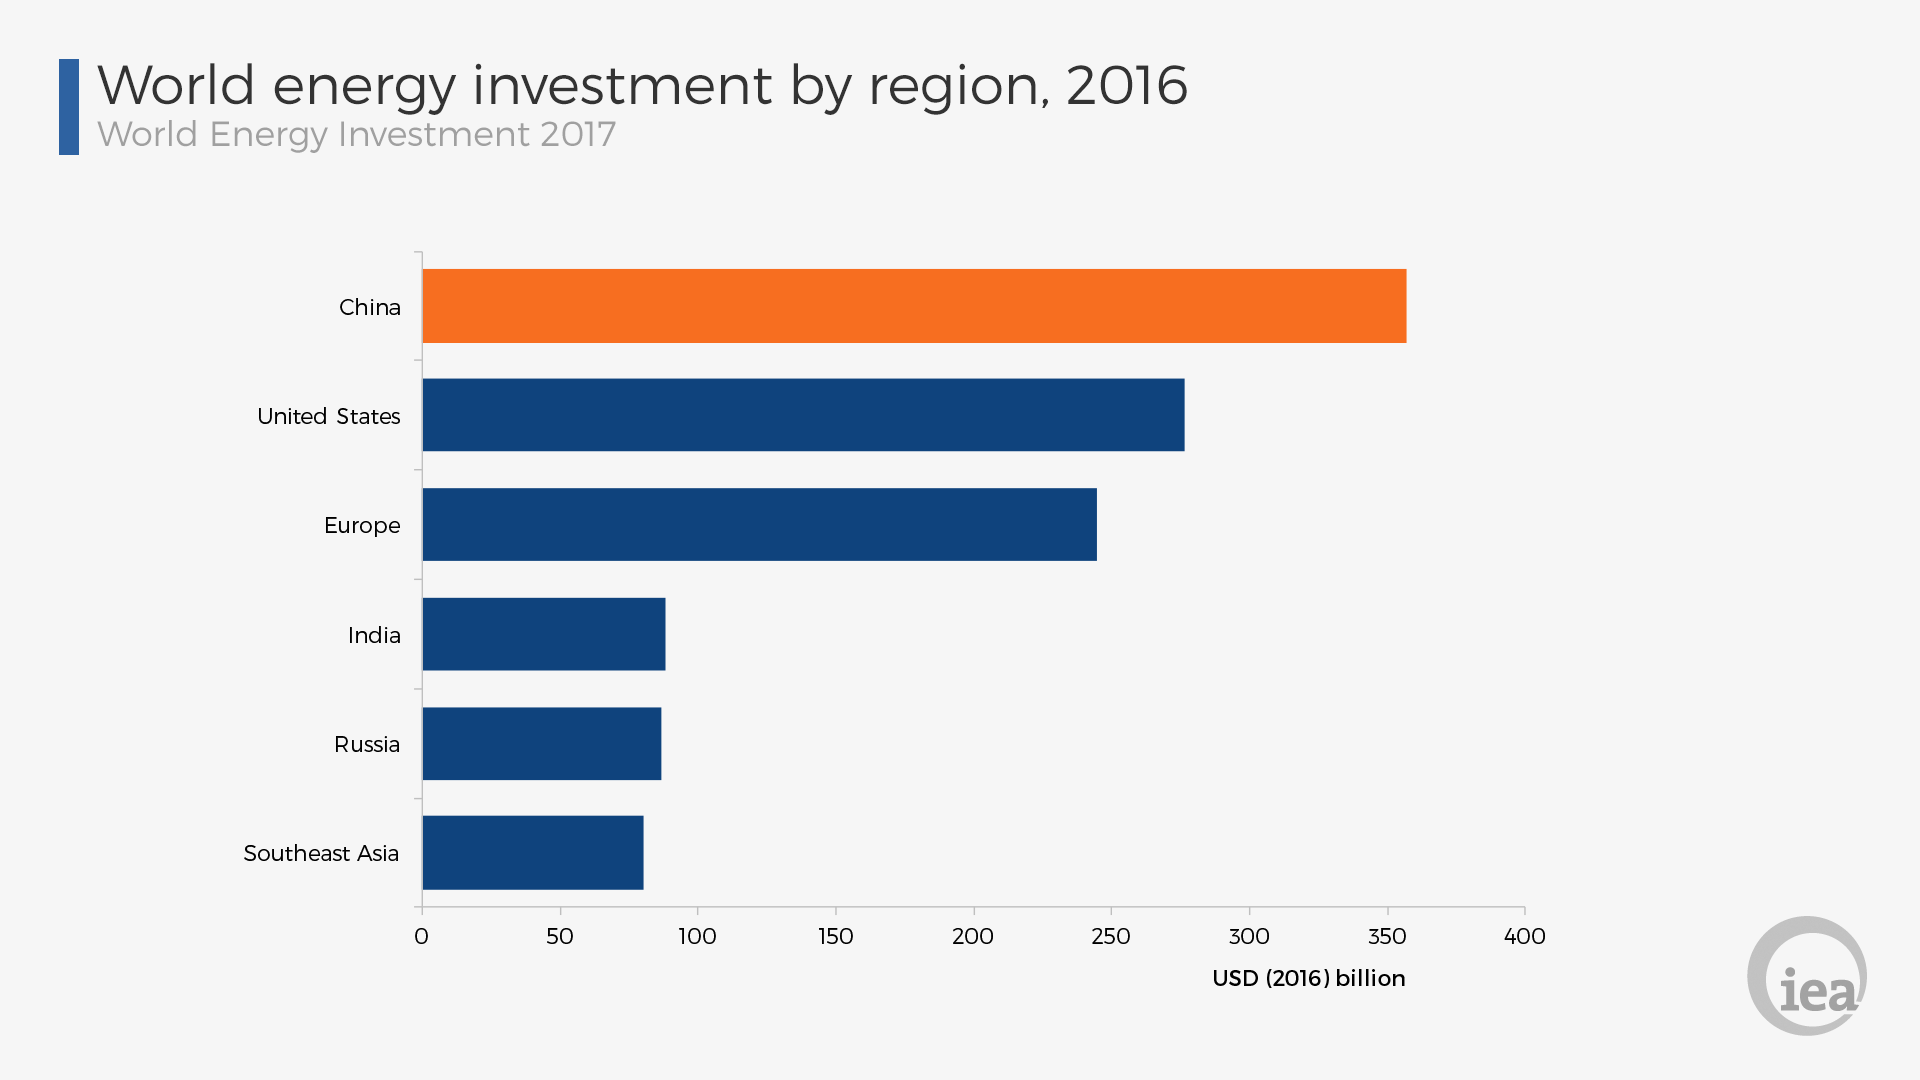 Світові інвестиції в енергетику по регіонам, 2016 рік